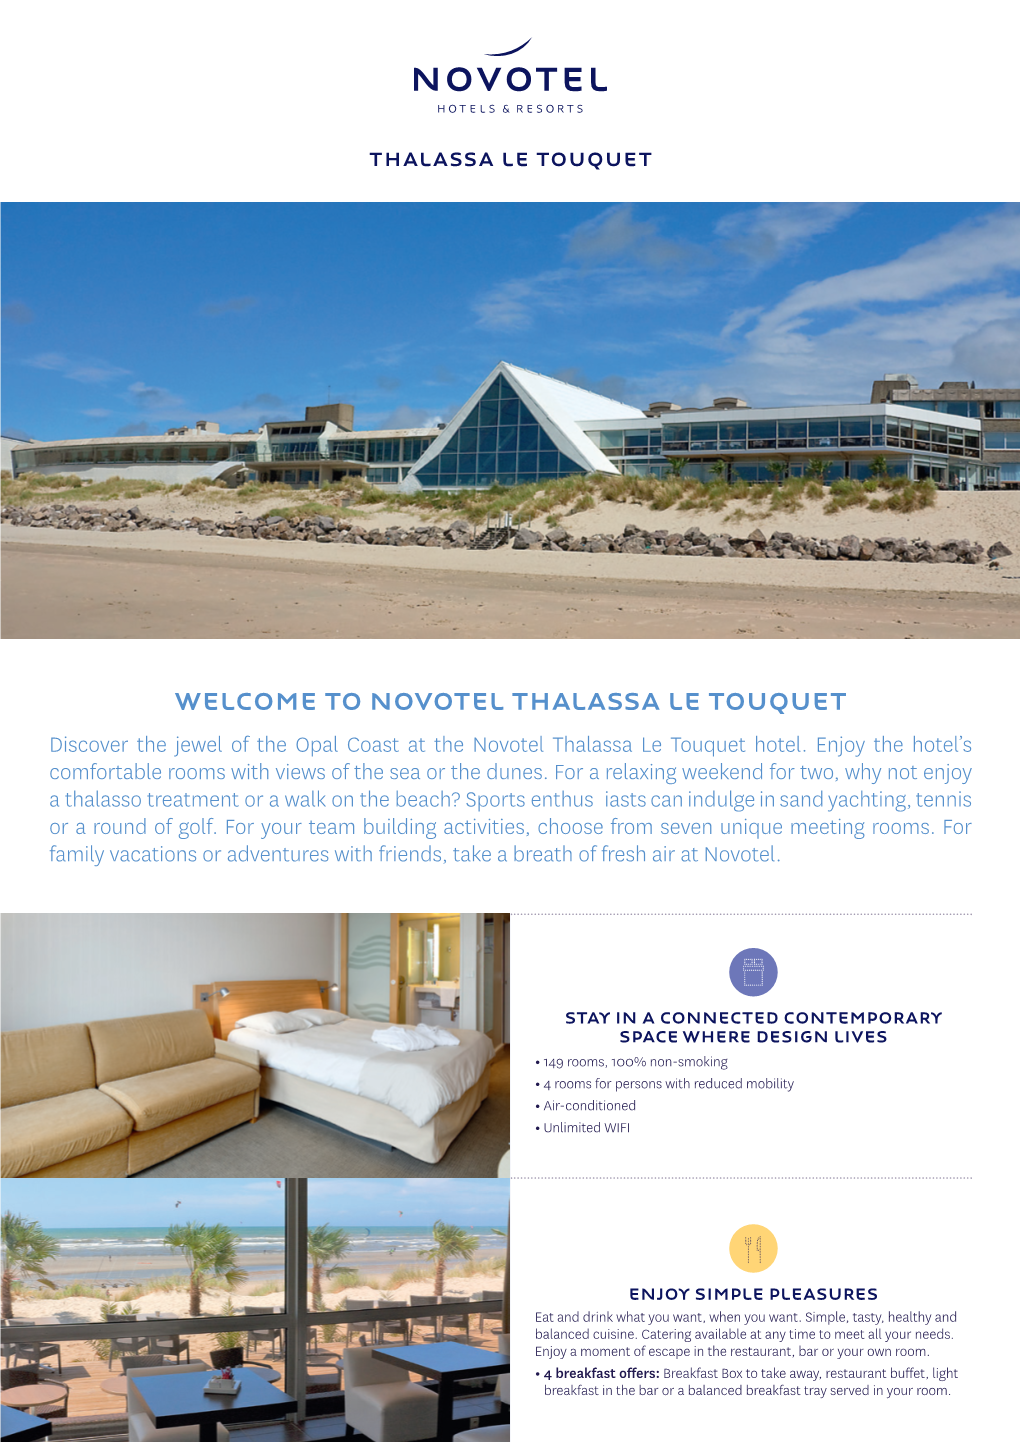 Novotel Thalassa Le Touquet Discover the Jewel of the Opal Coast at the Novotel Thalassa Le Touquet Hotel